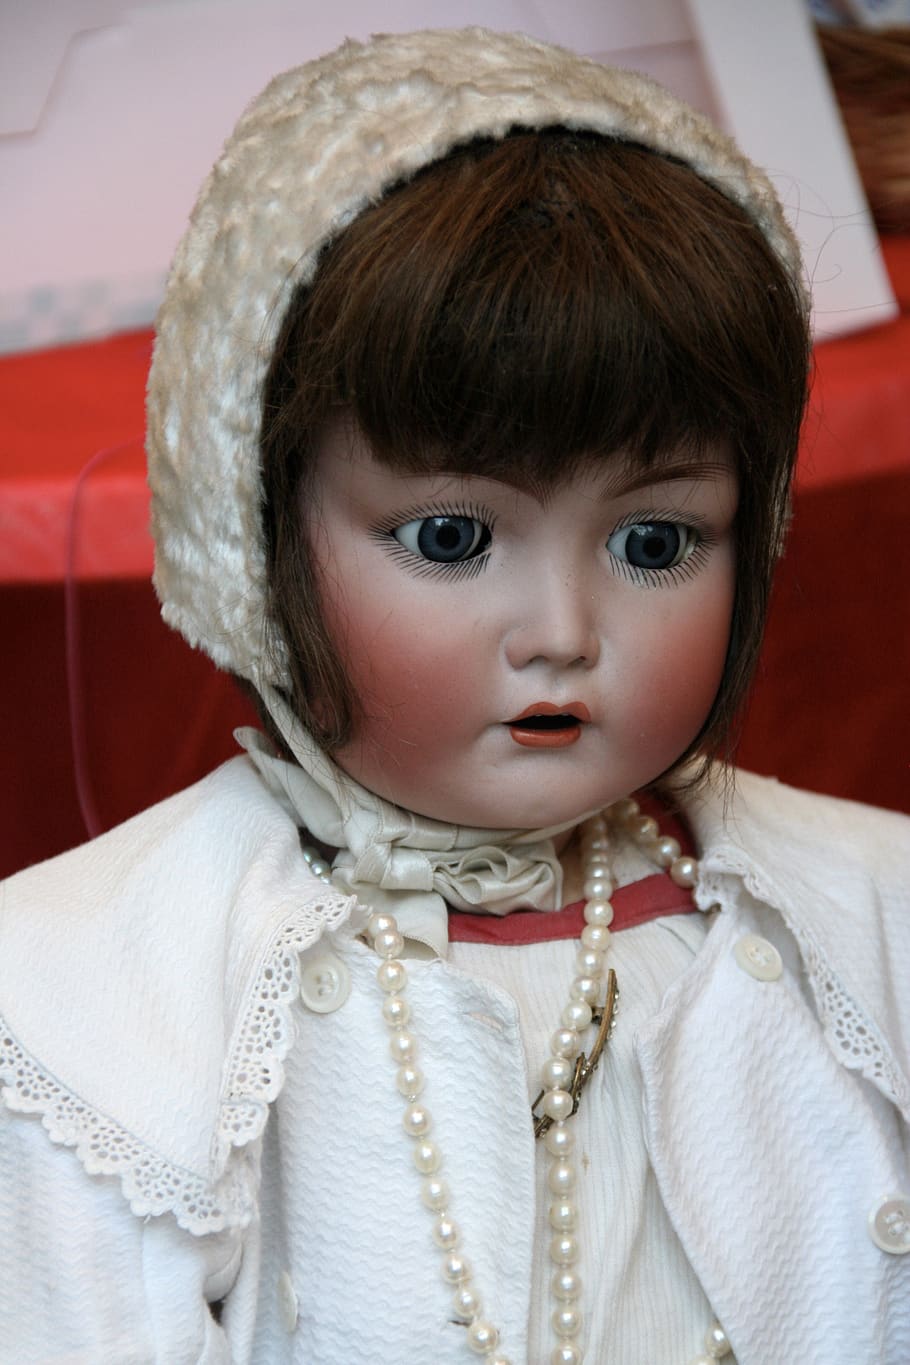 german porcelain dolls